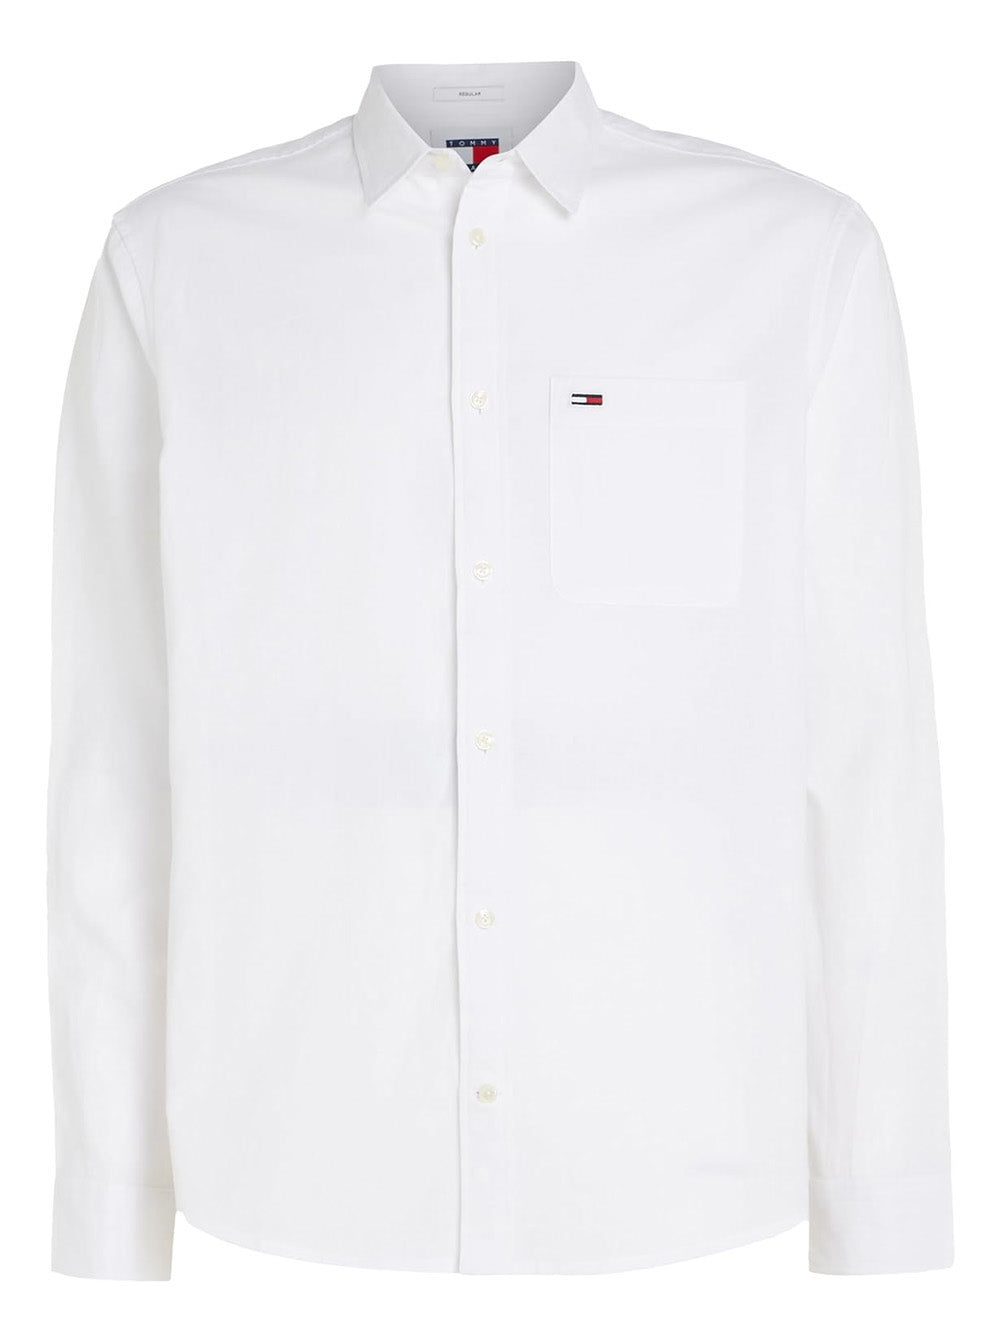 TOMMY HILFIGER Camicia Uomo - Bianco modello DM0DM18962